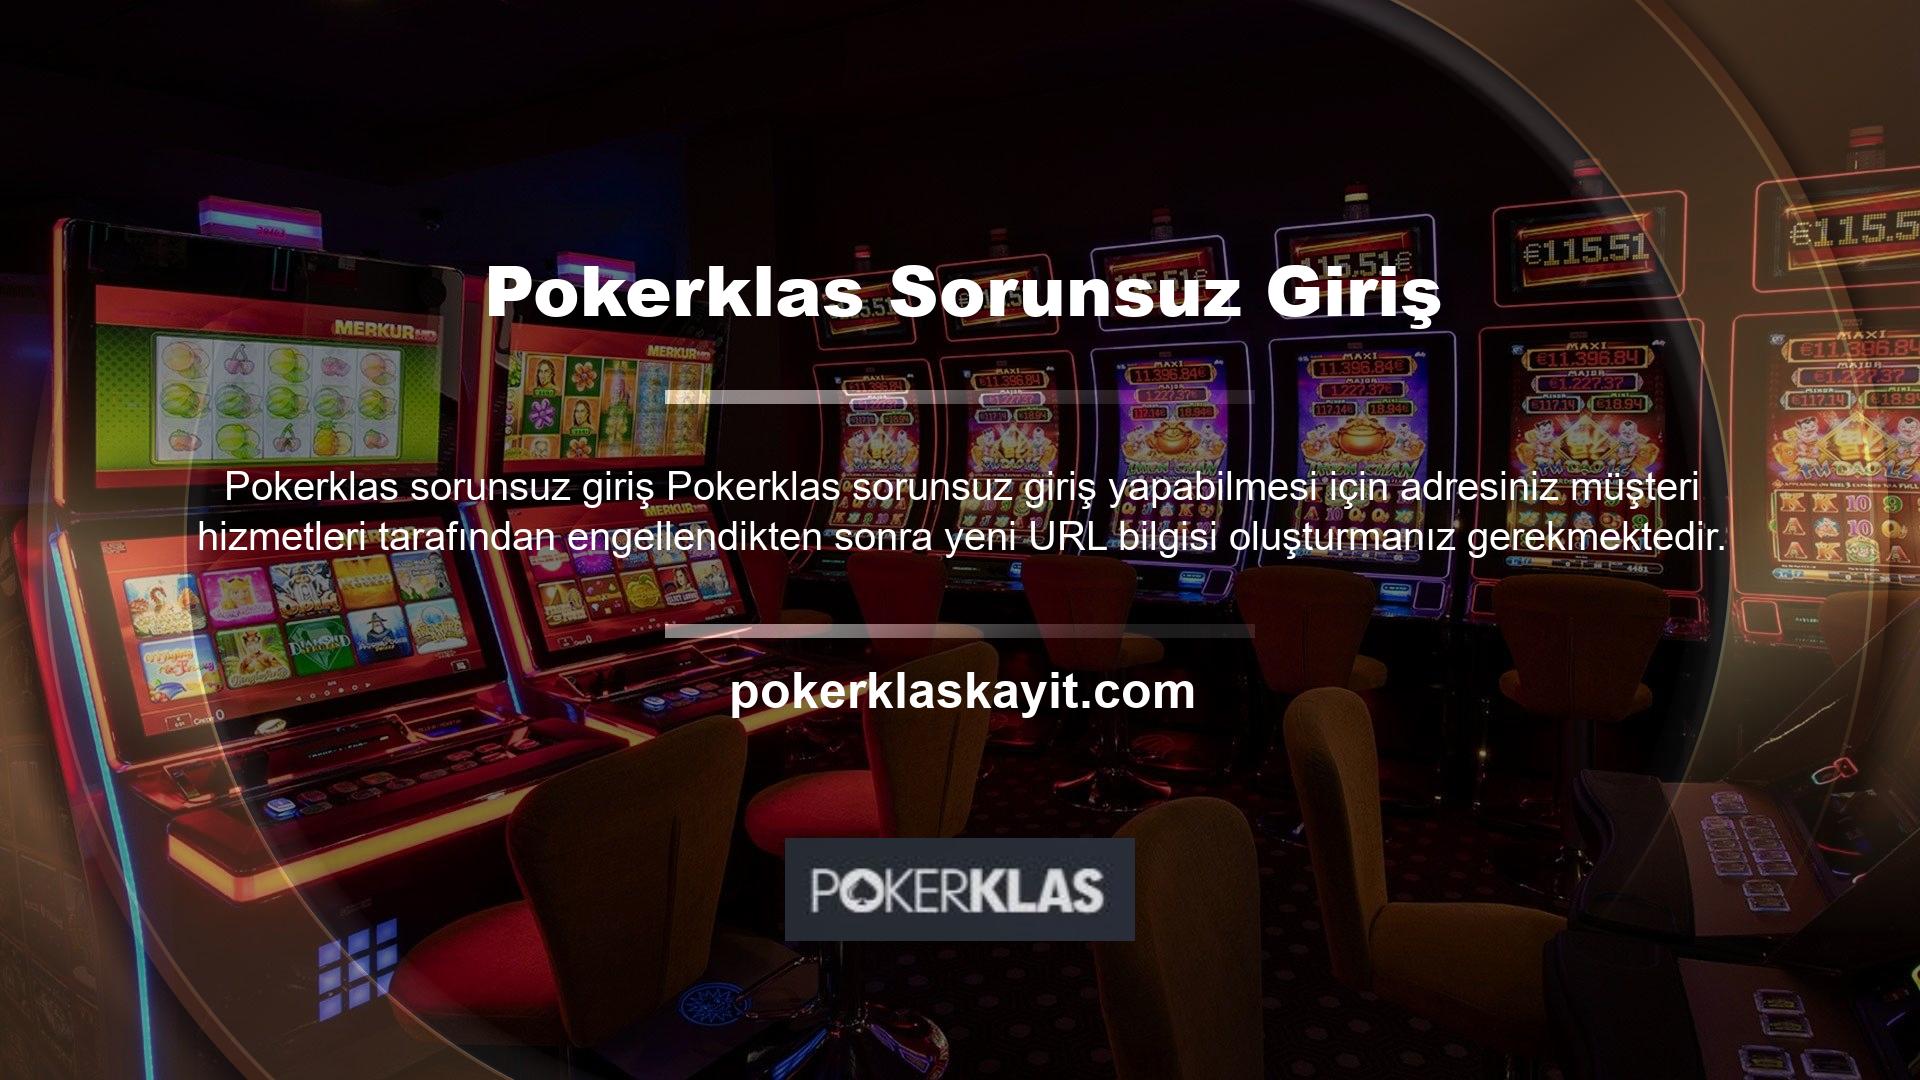 Pokerklas Müşteri Hizmetleri tarafından etkinleştirilen kimlik bilgilerine erişim, Pokerklas giriş yapamama sorununu da çözmektedir